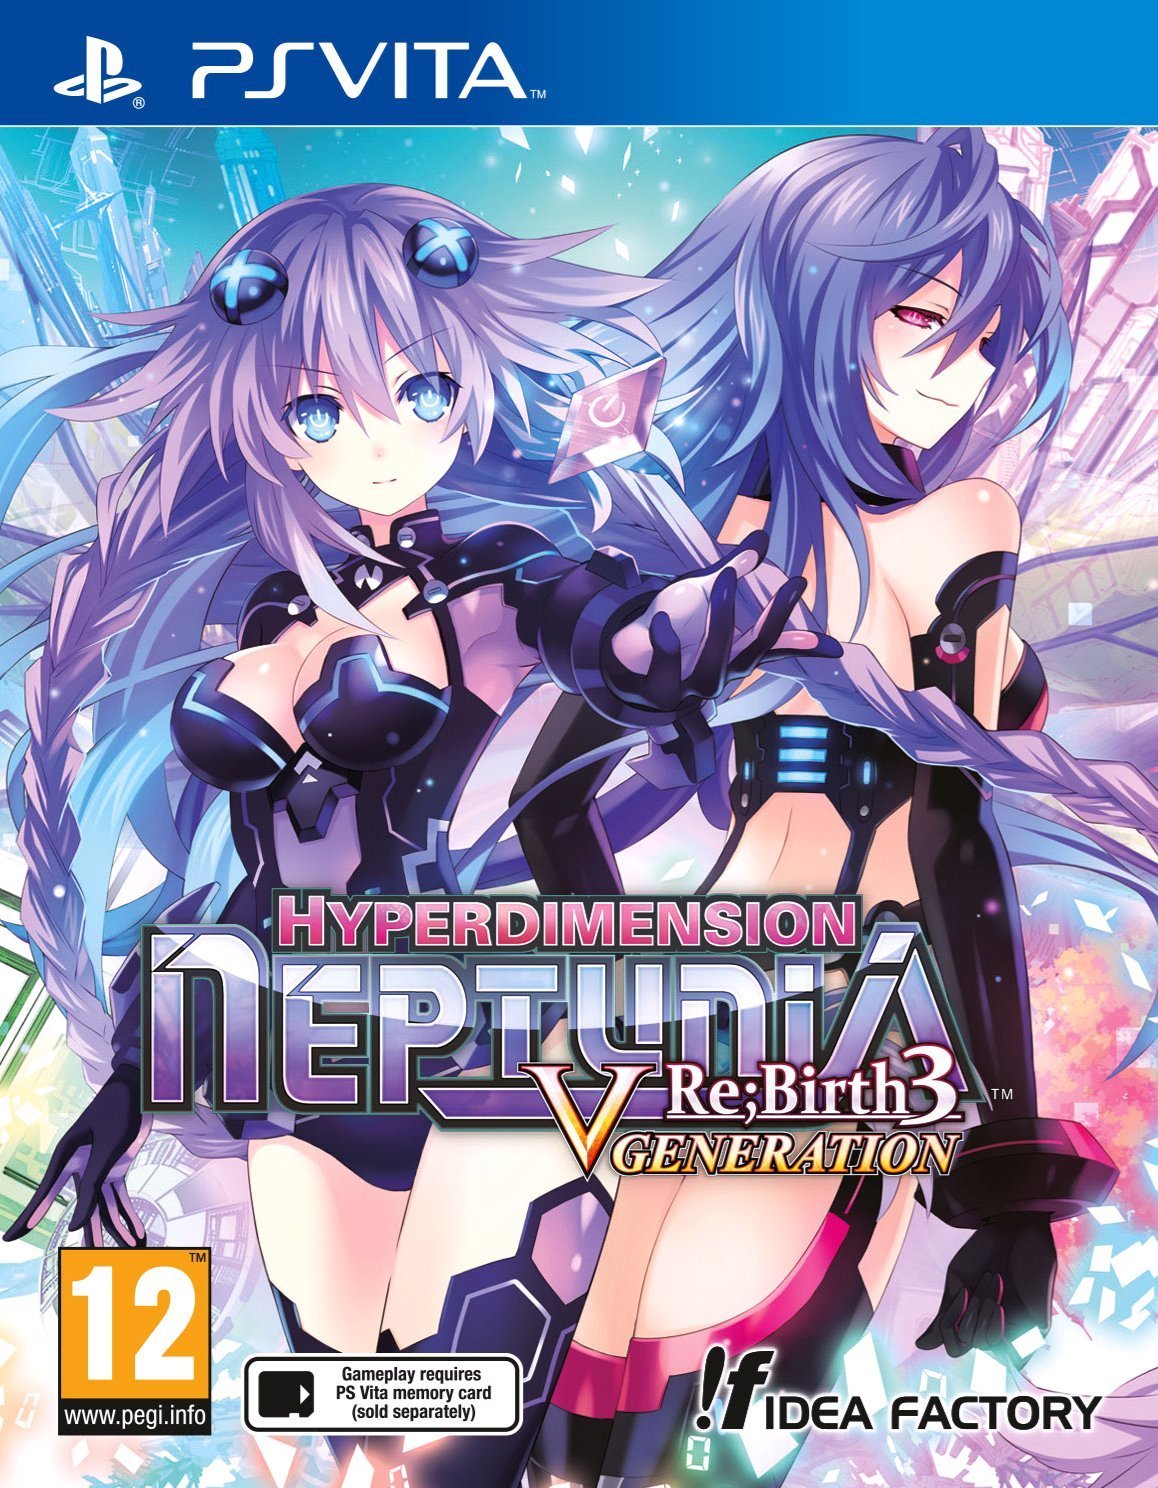 Hyperdimension Neptunia Re Birth 3: V Generation (PSVita), F Idea Factory